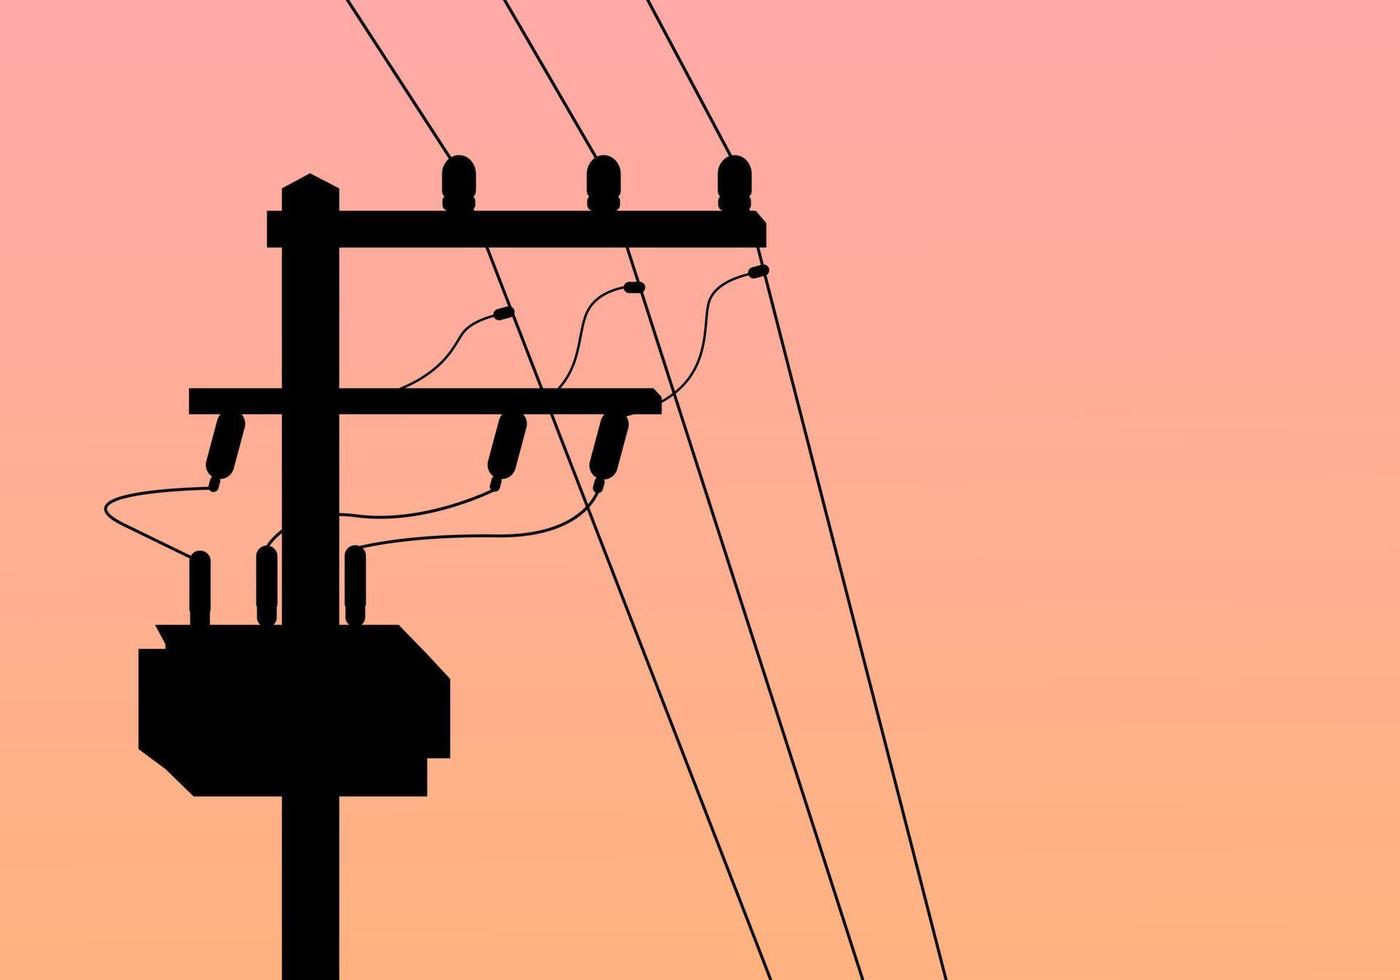 Silhouette hoch Stromspannung Leistung elektrisch Pole mit Transformator und fallen Sicherung mit Dämmerung Abend Orange Hintergrund eben Vektor Design.